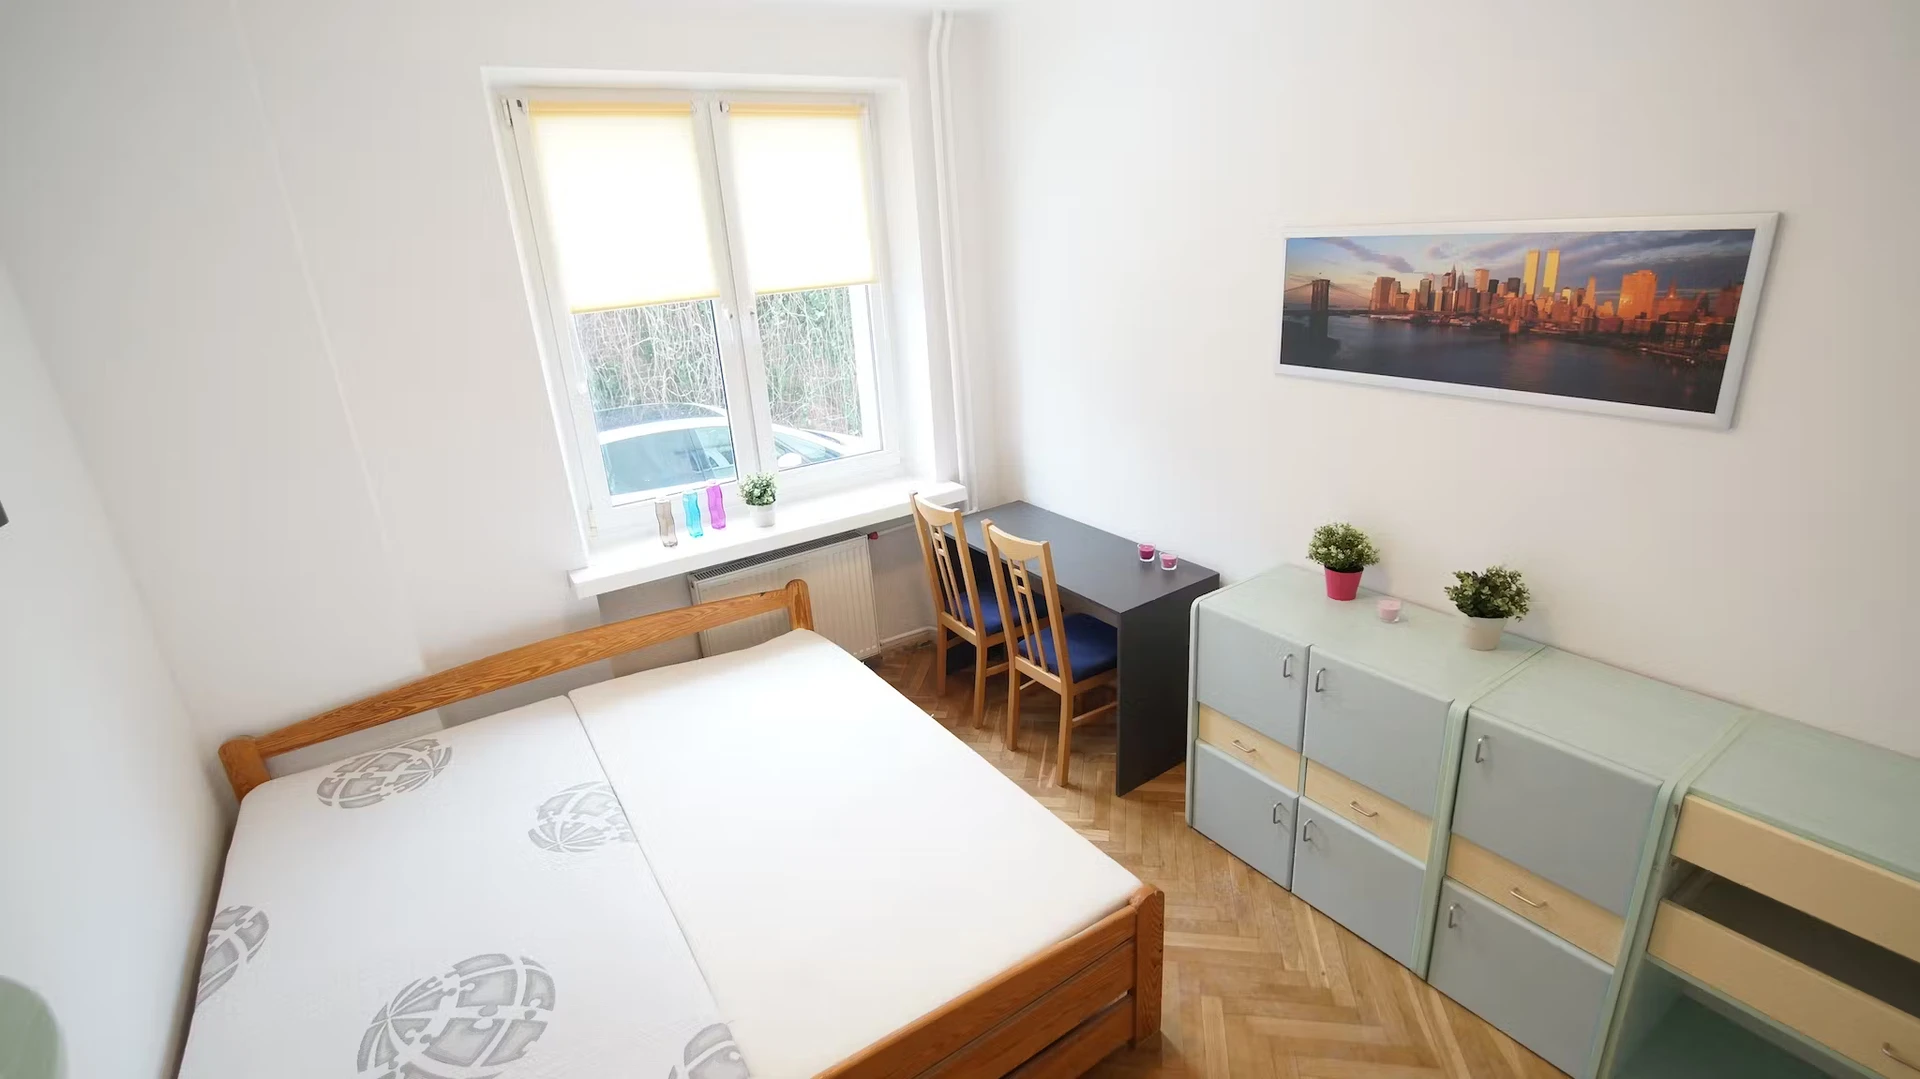 Quarto para alugar num apartamento partilhado em Lódz